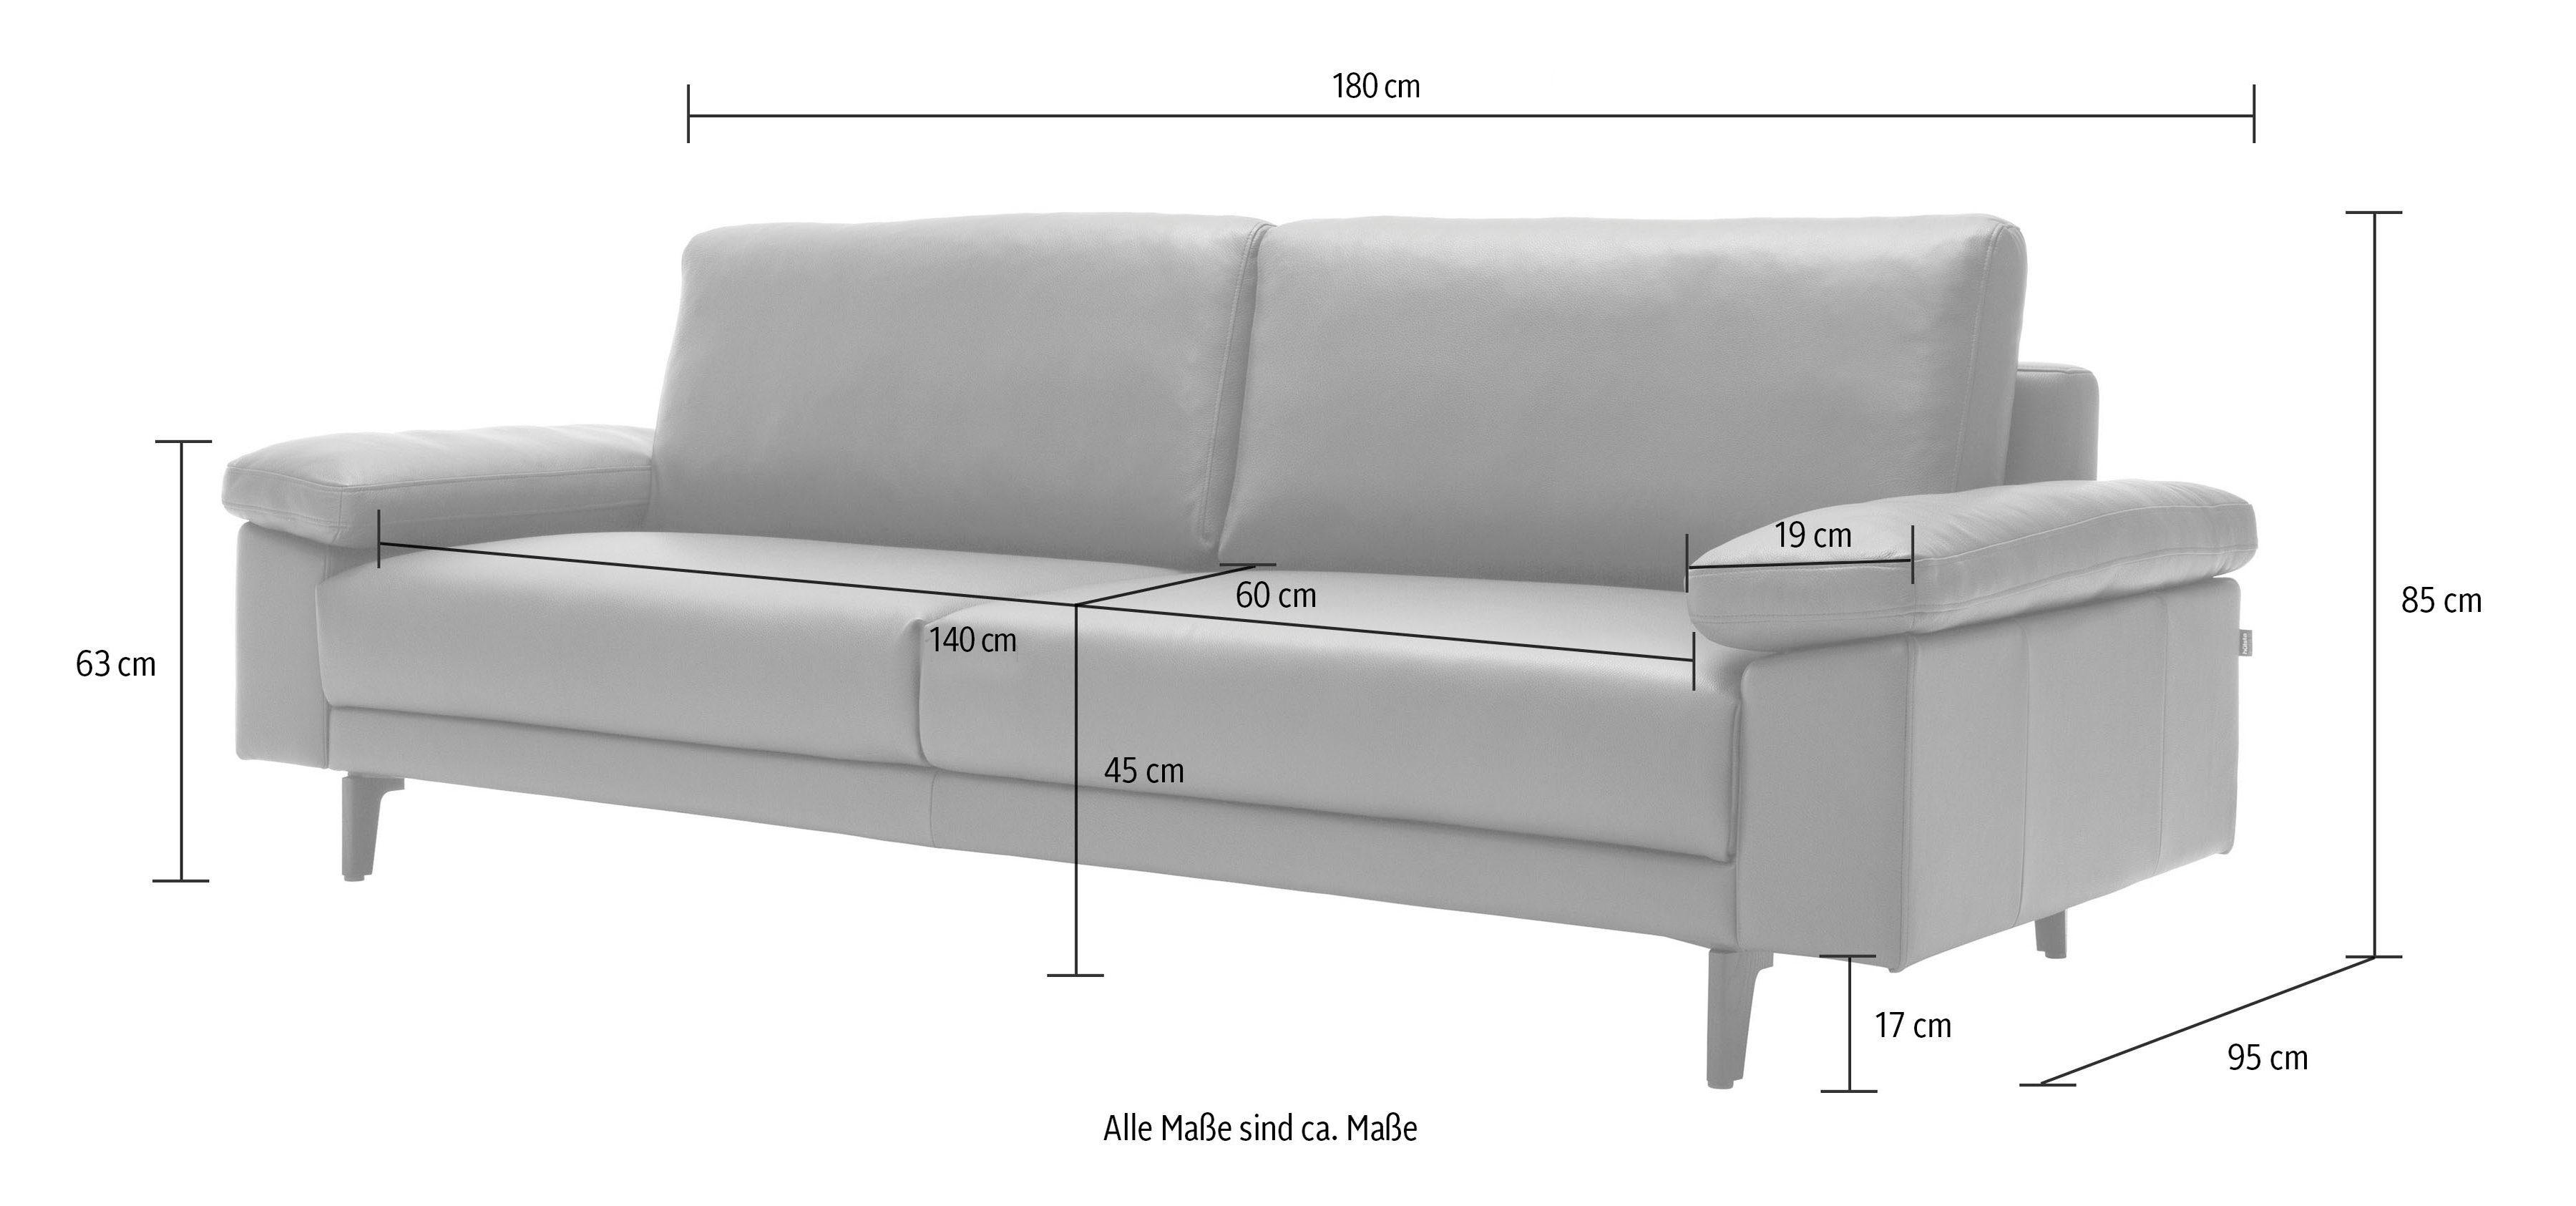 2-Sitzer hülsta hs.450 sofa